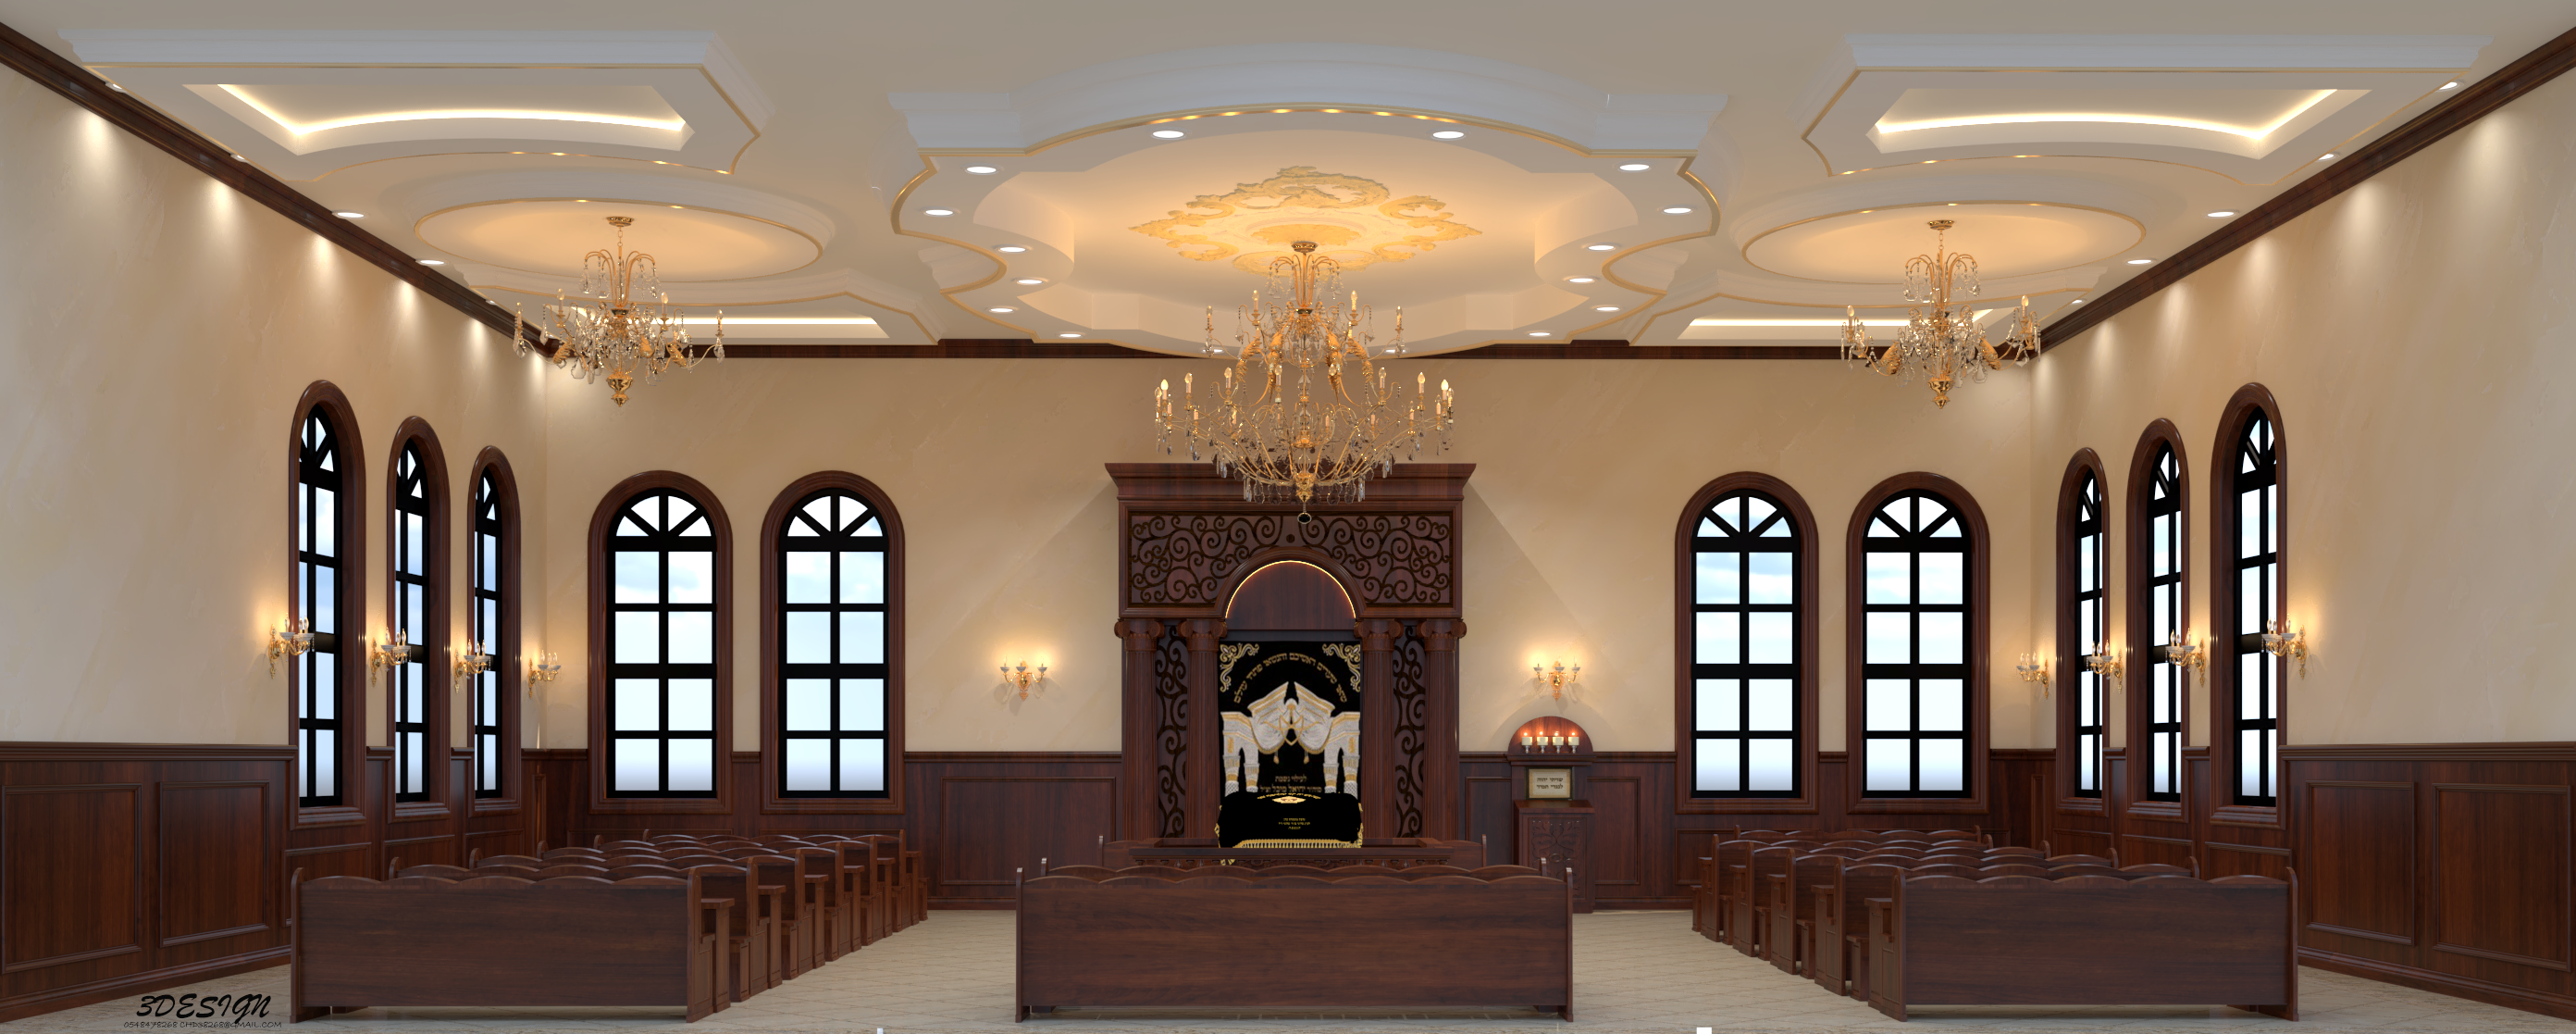 בית הכנסת.png